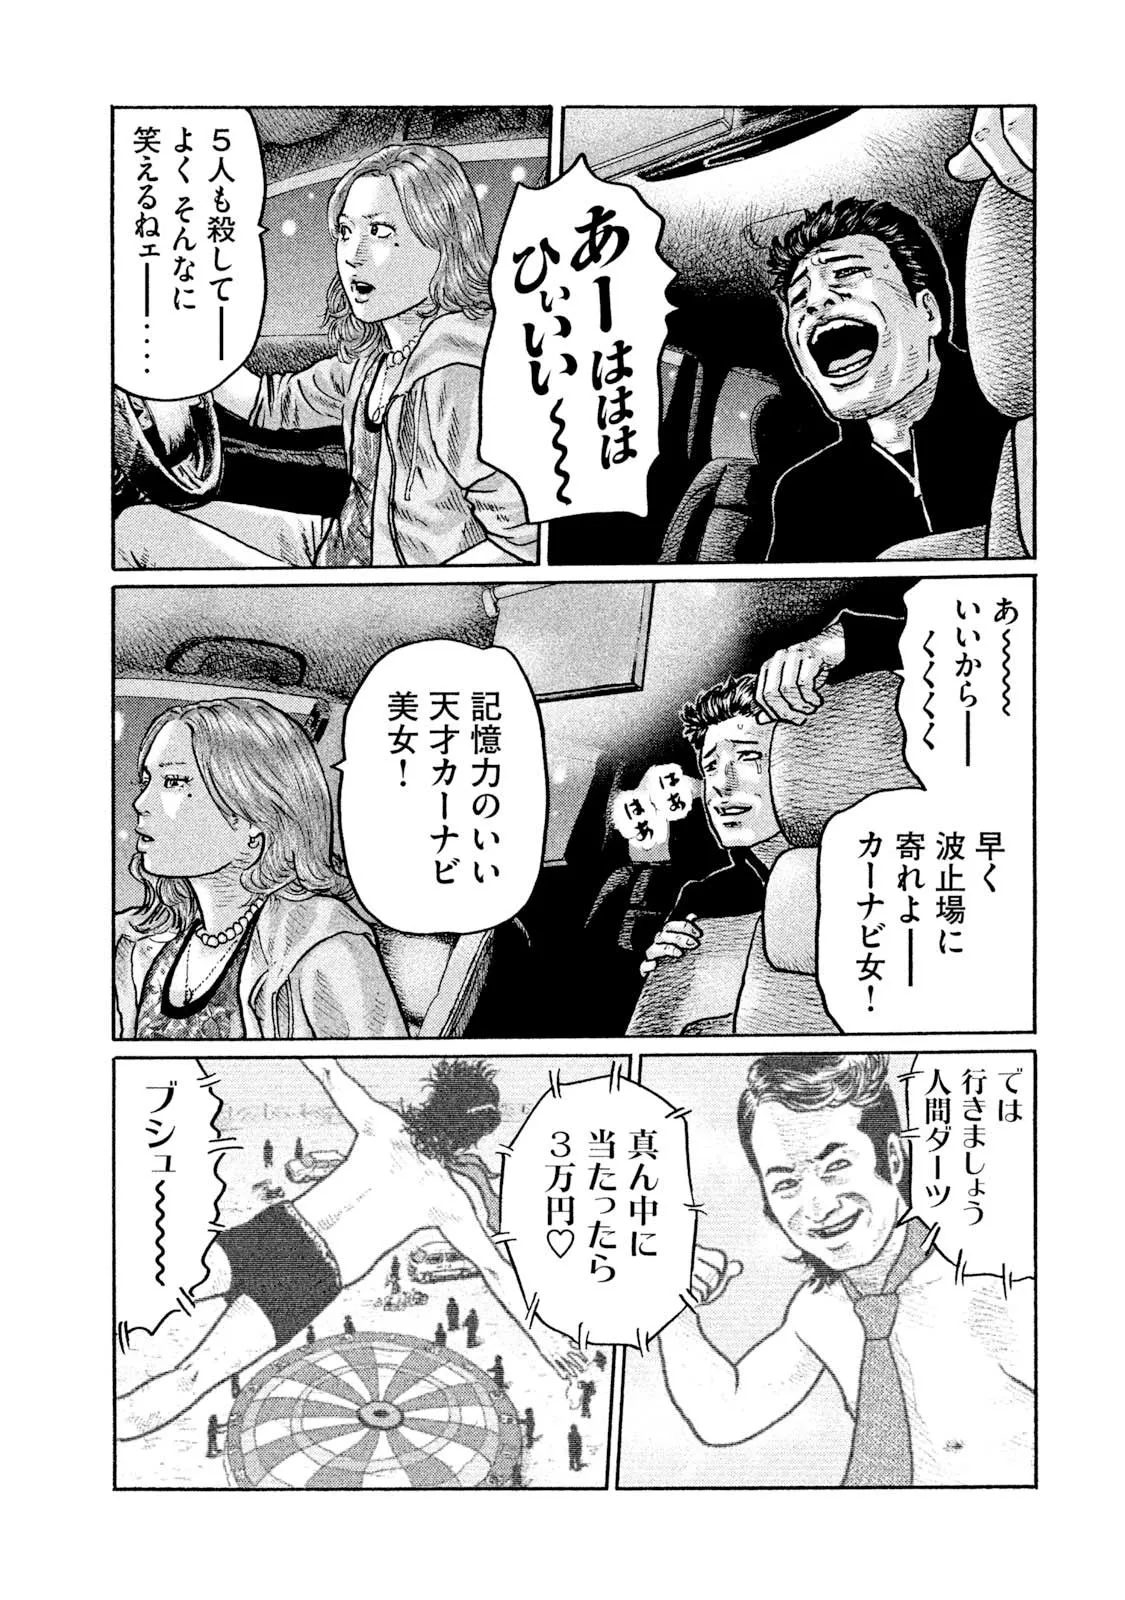 ザ・ファブル 原作コミック 35ページ目